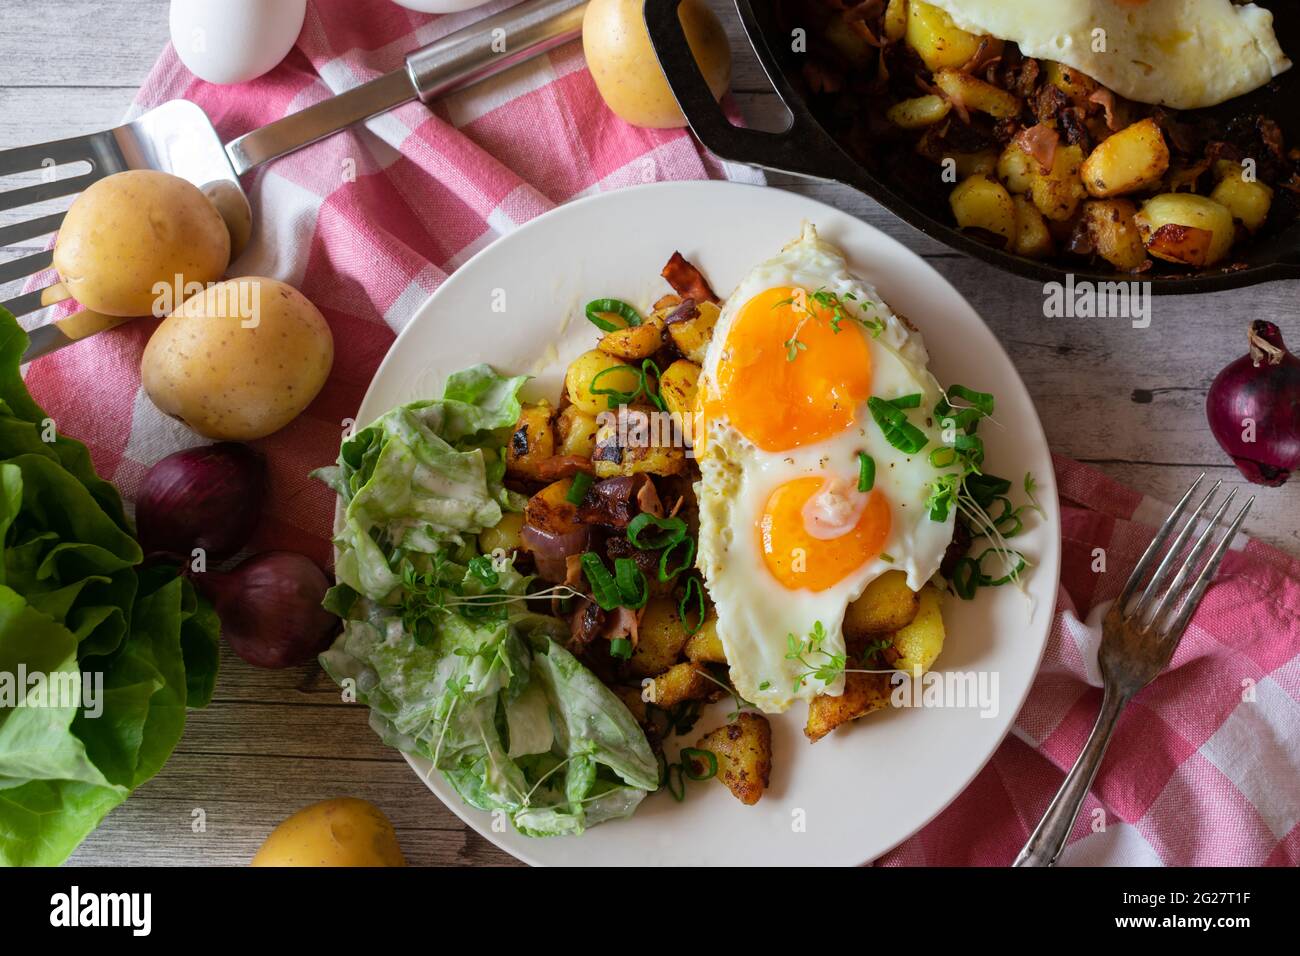 Herzhaftes vegetarisches Landgericht mit Bratkartoffeln, Eiern und Salat mit Sauerrahm-Dressing, serviert auf einem Teller auf rustikalem Holztisch-Hintergrund Stockfoto